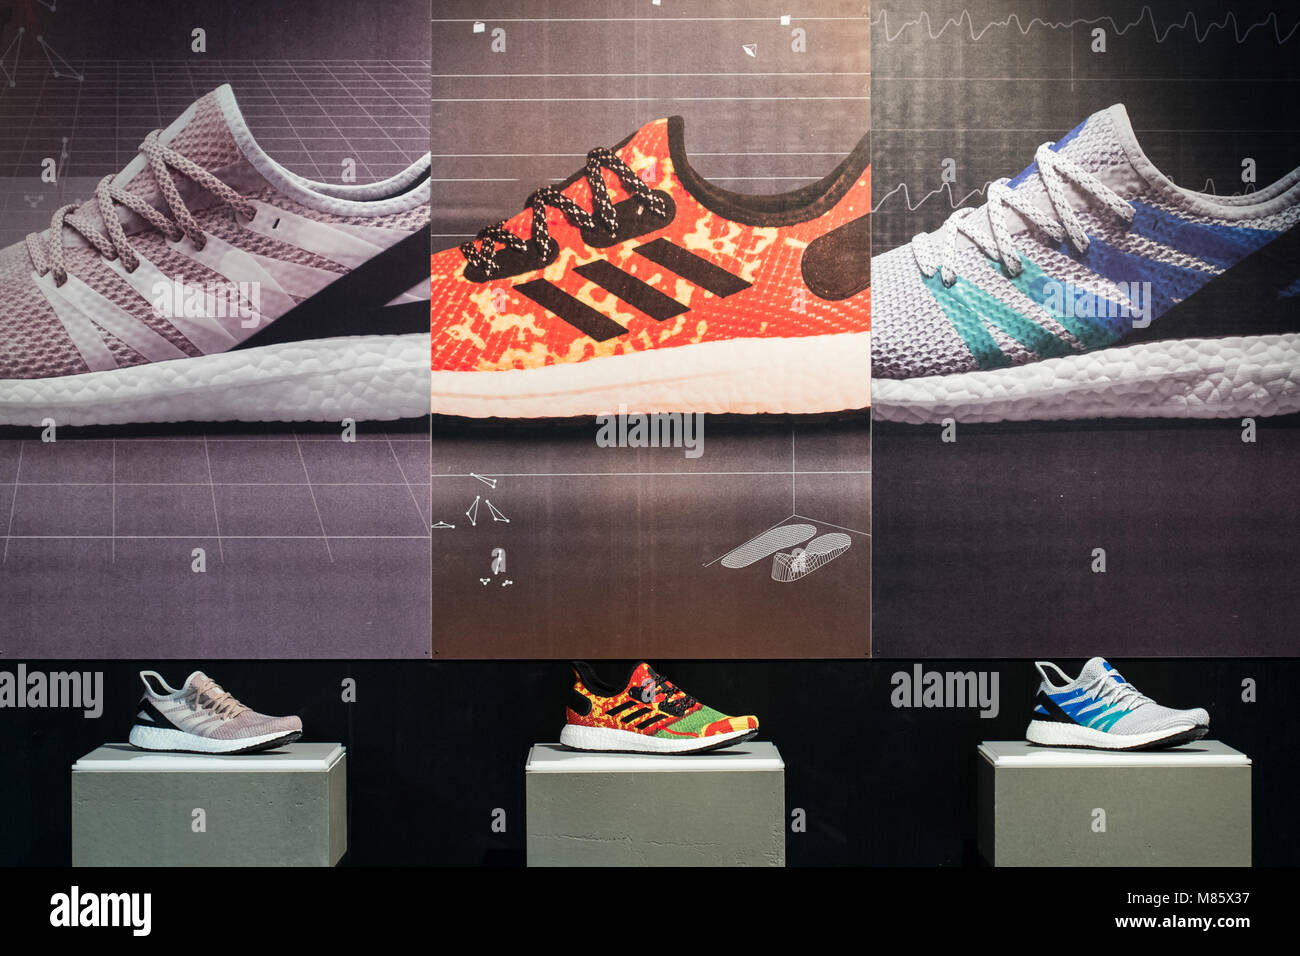 14 de marzo de 2018, Alemania, Herzogenaurach: zapatillas Adidas que fueron  producidos en la fábrica de velocidad están en exhibición durante la  conferencia de prensa sobre los resultados anuales de adidas AG.